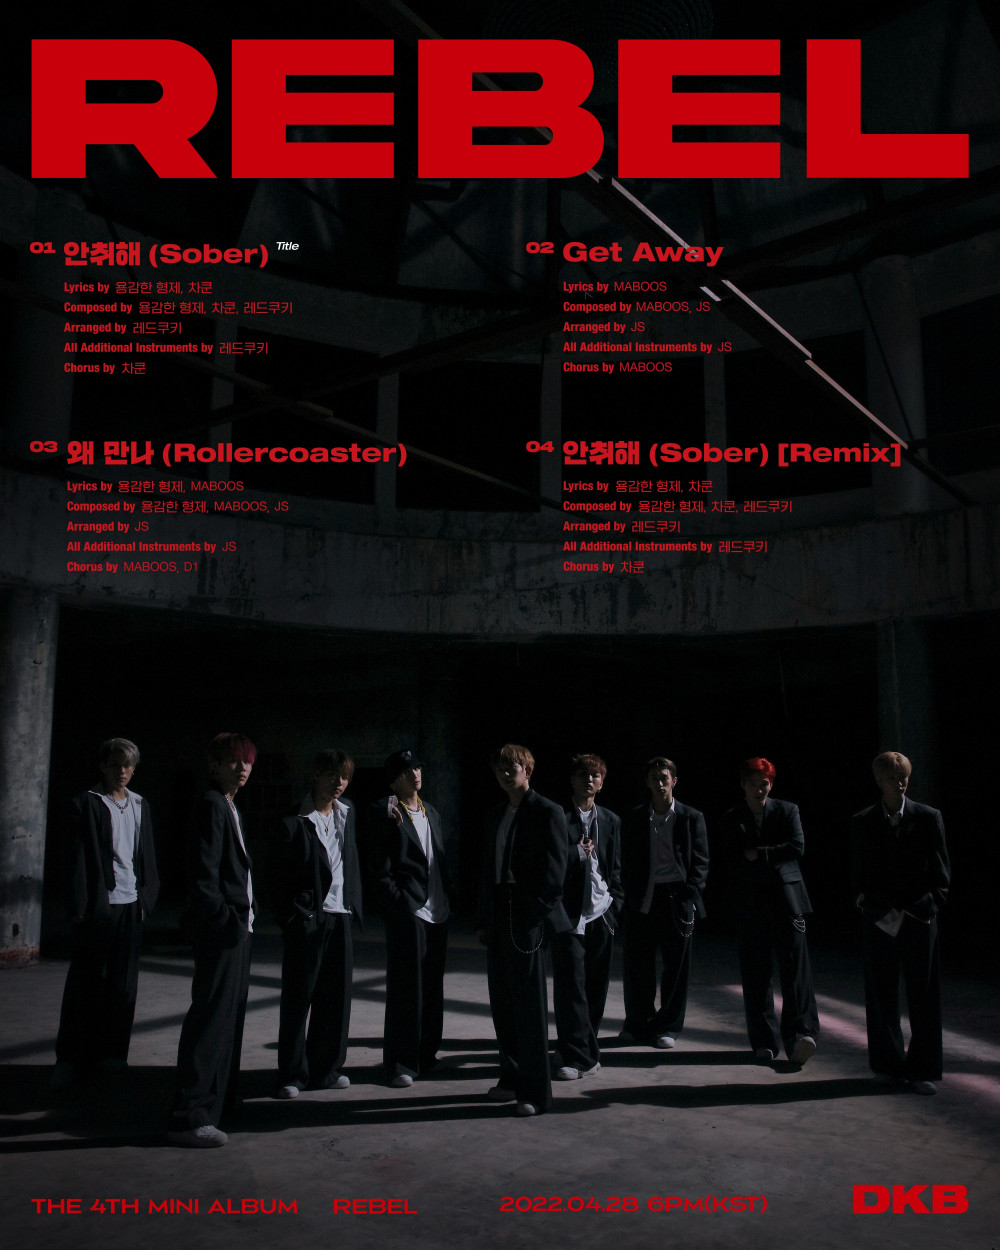 [Камбэк] DKB мини-альбом «Rebel»: музыкальный клип "Sober" (перфоманс-версия)